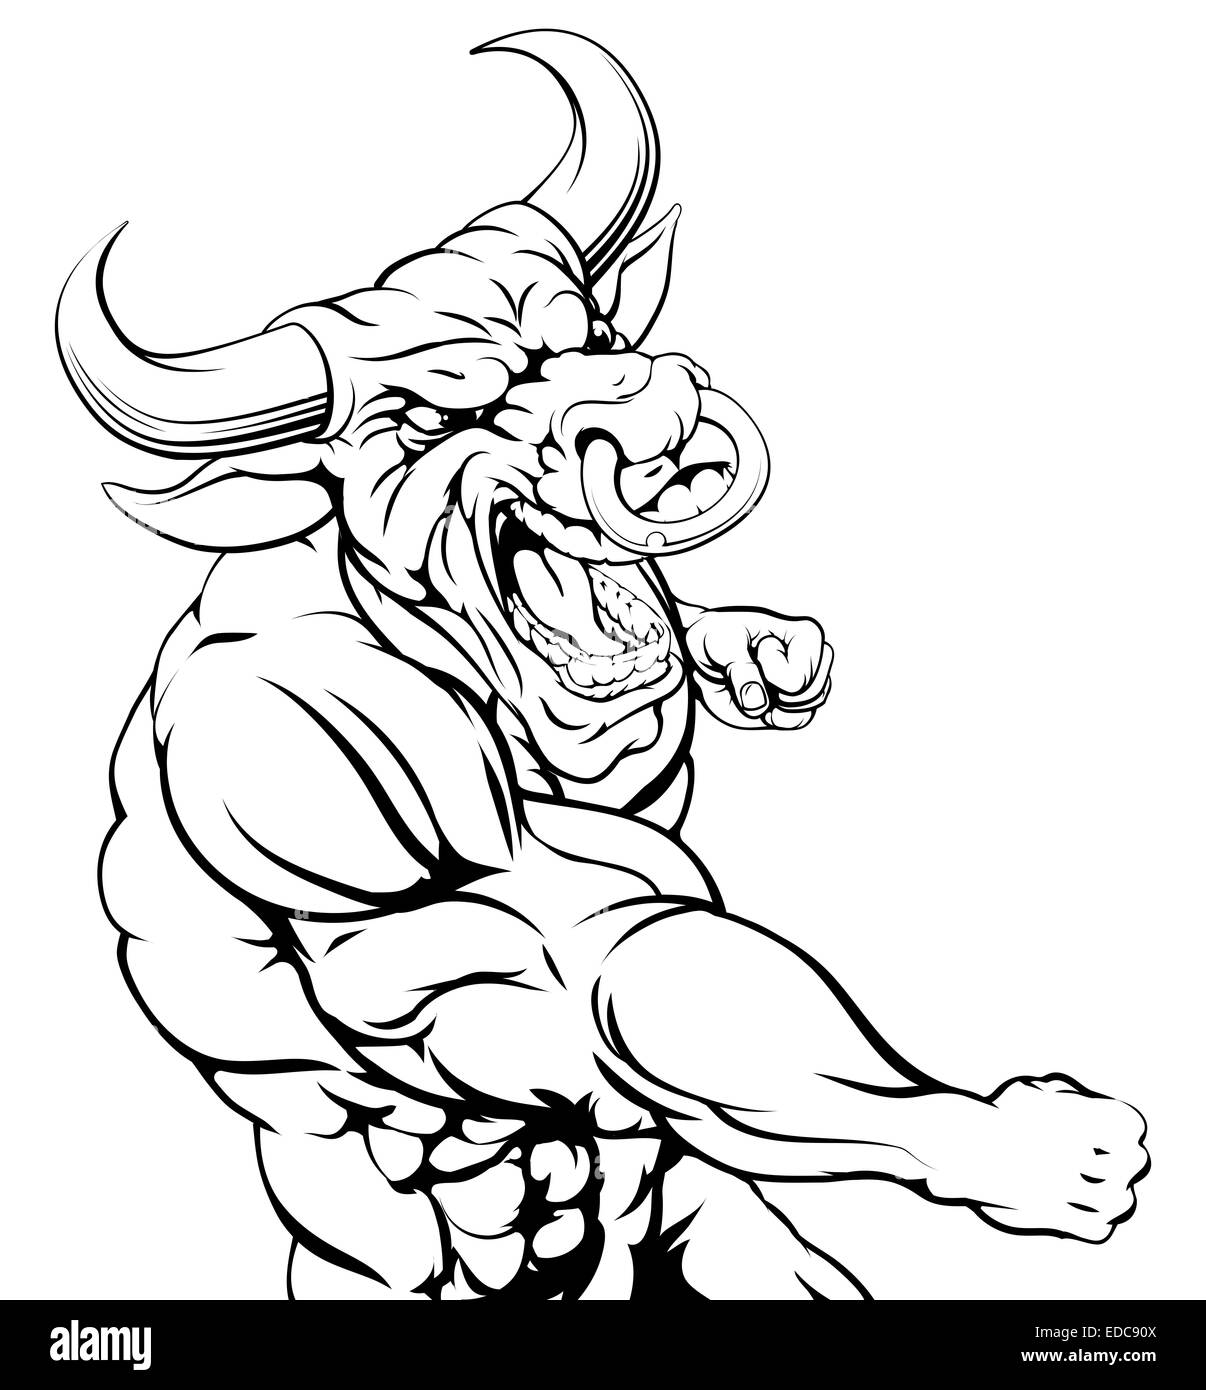 Une illustration d'un personnage animal taureau ou sportives mascot punching Banque D'Images